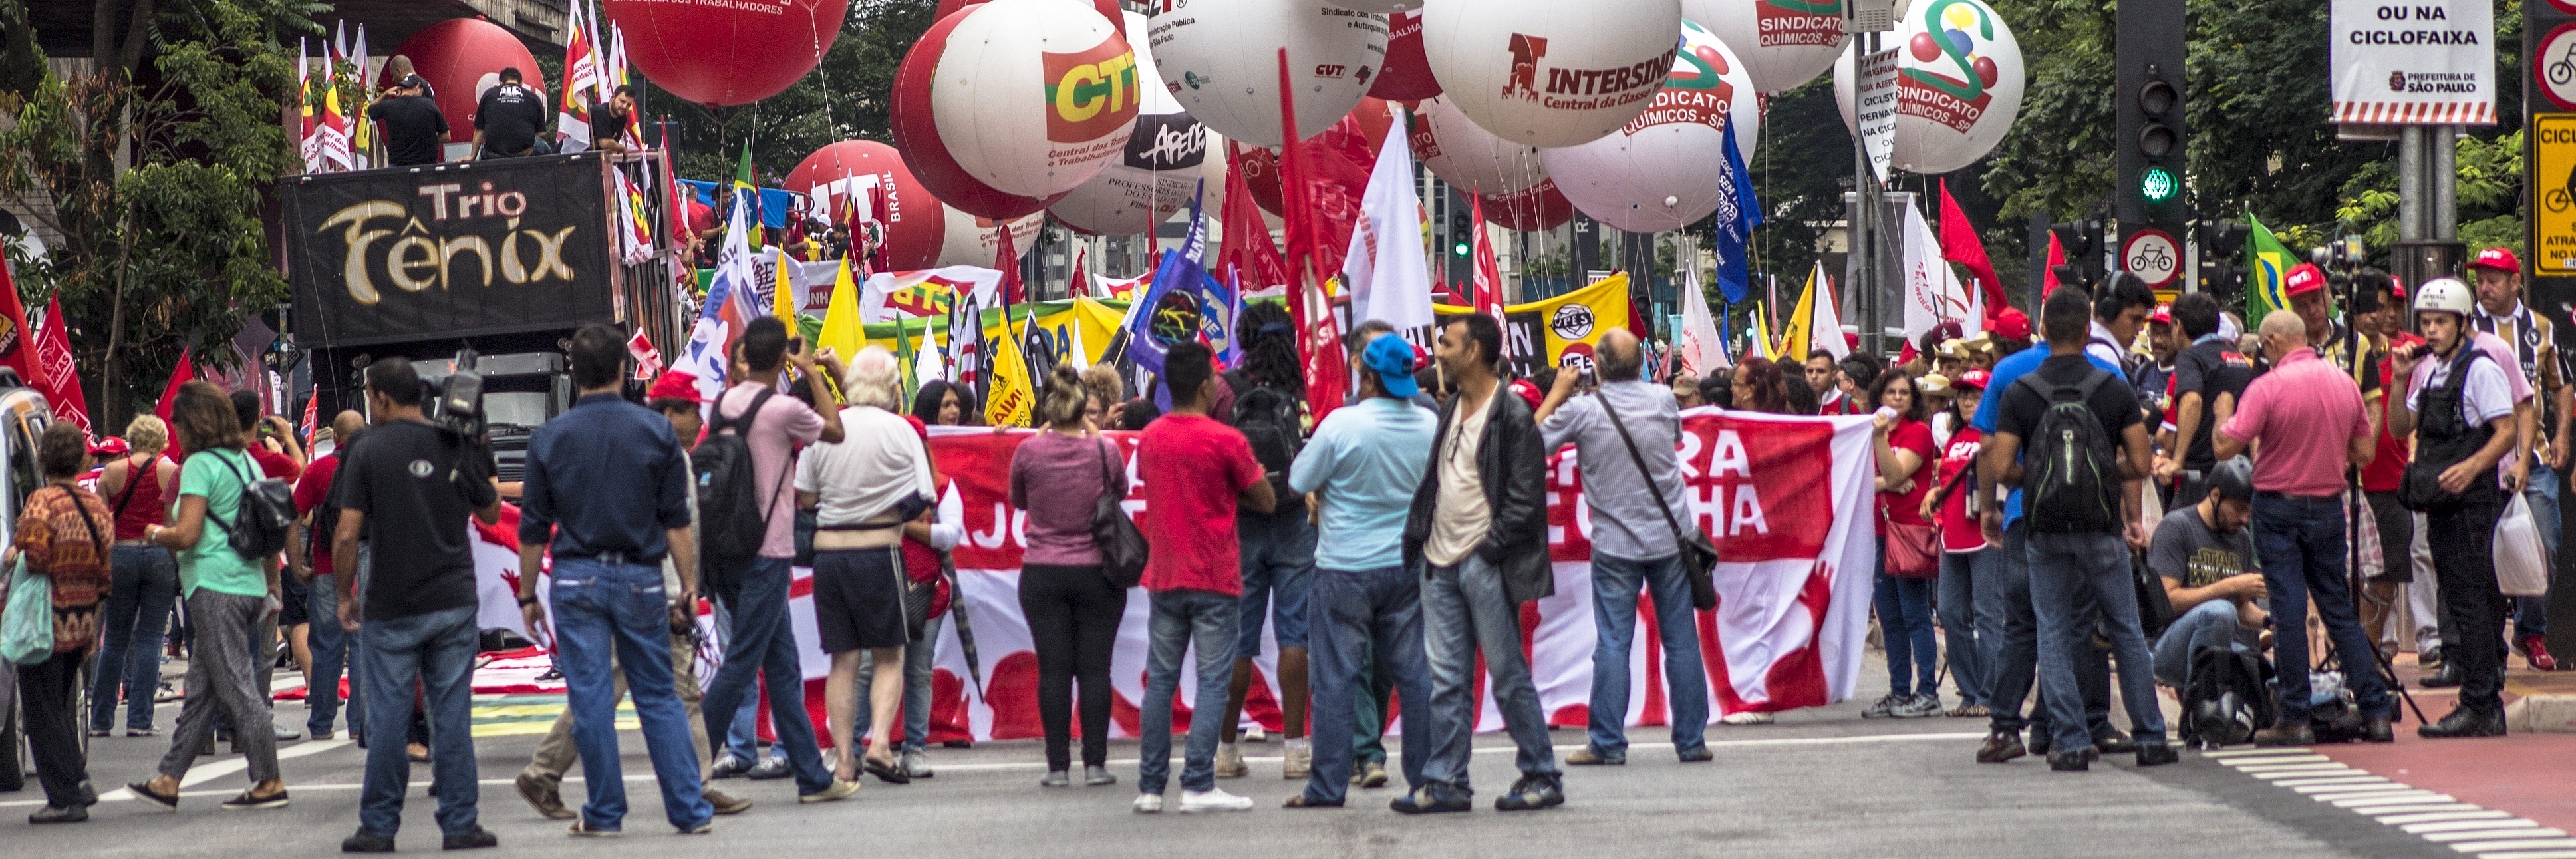 Demonstration zur sozialen Gerechtigkeit in Brasilien